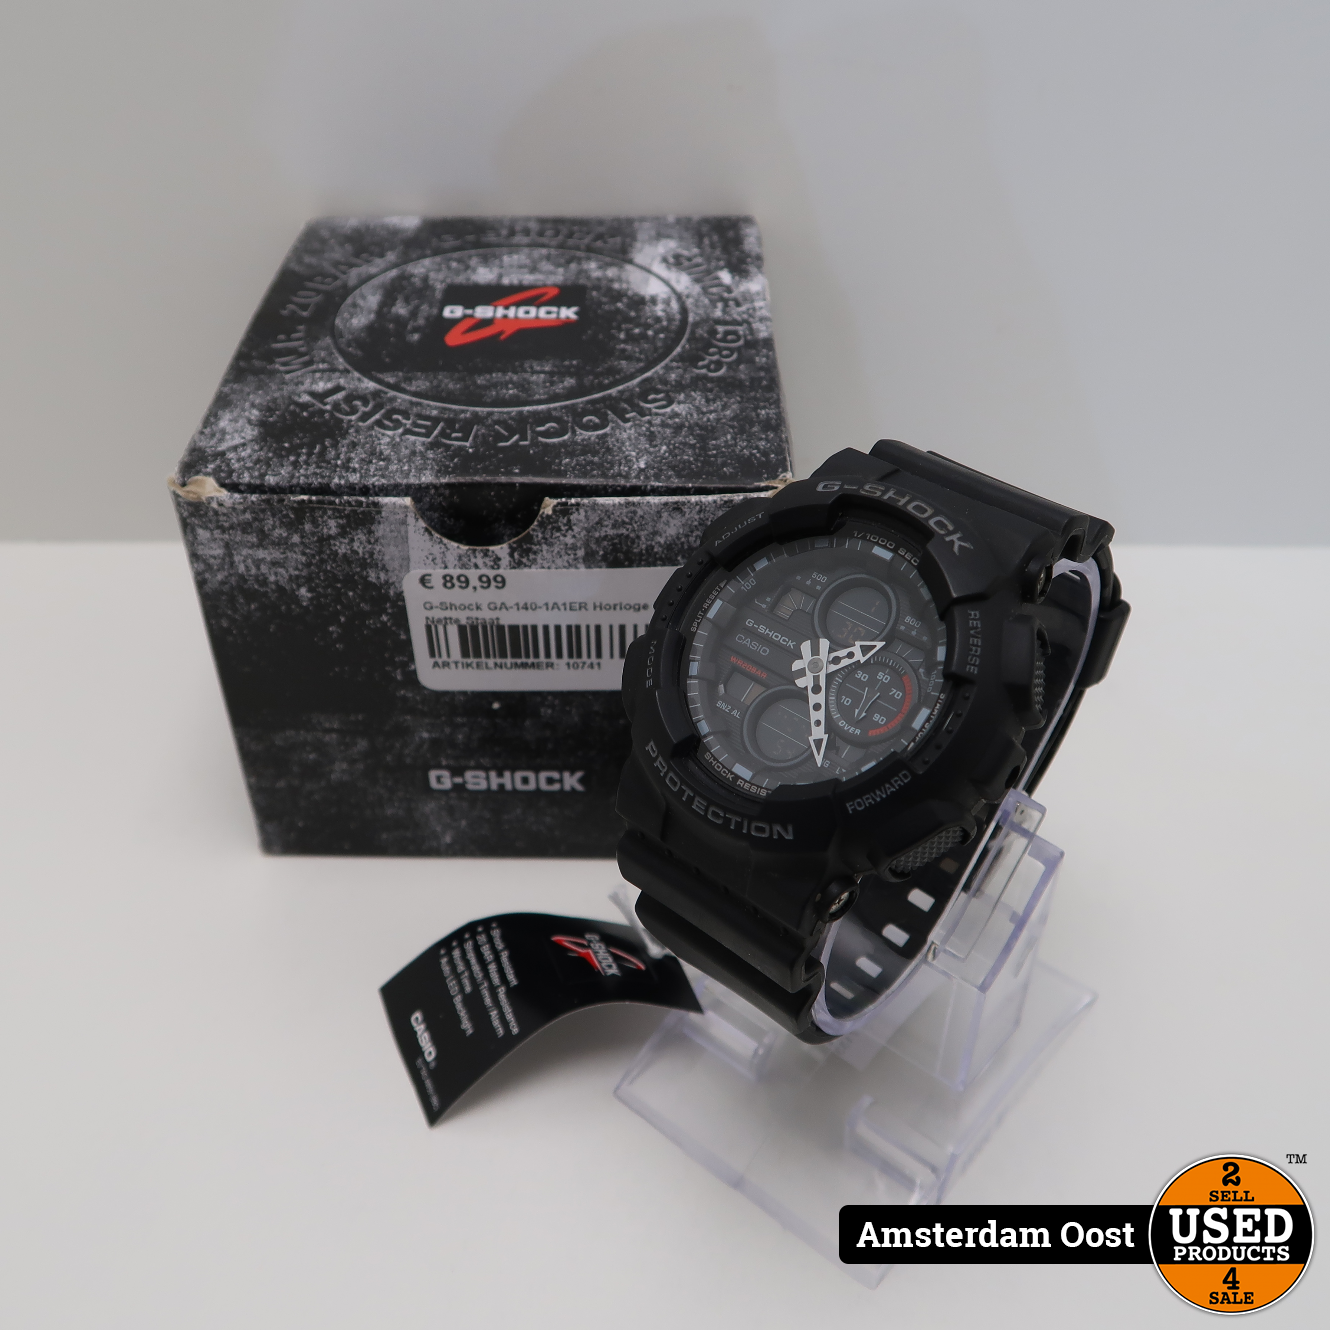 Of anders Aanpassen Prik G-Shock GA-140-1A1ER Horloge | In Nette Staat - Used Products Amsterdam Oost